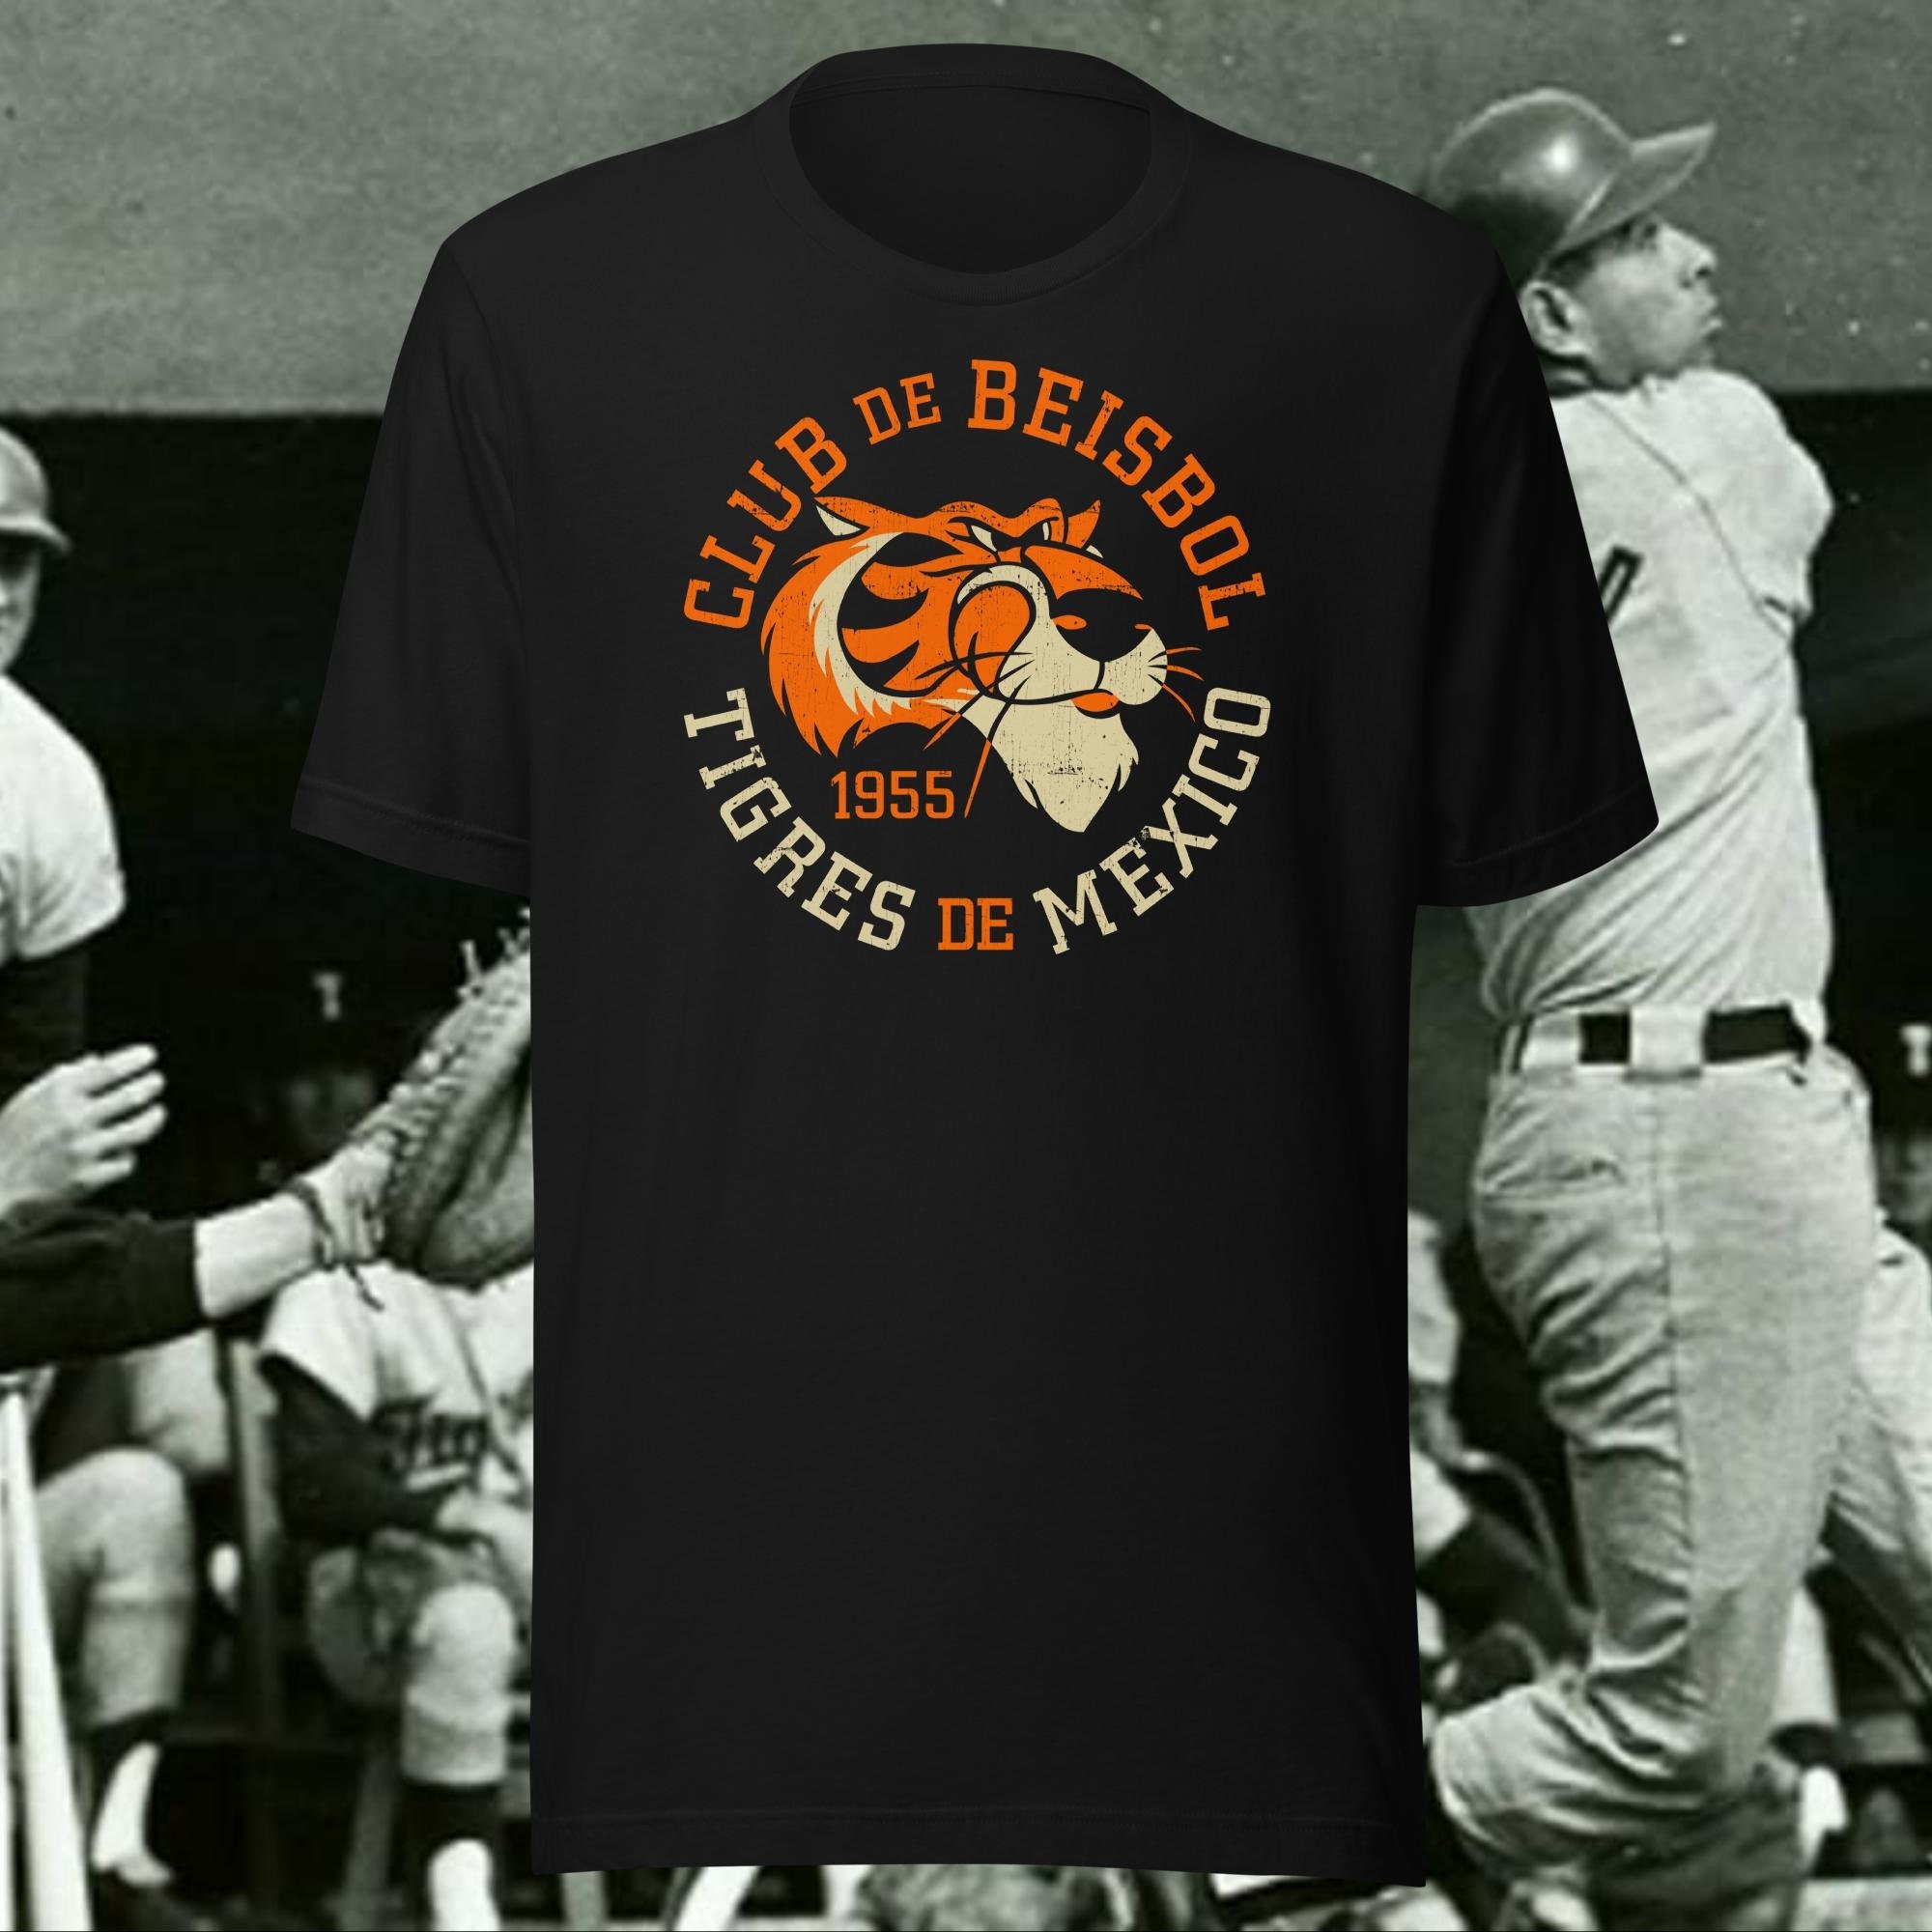 Tigres De Mexico / Mexico City Tigers 1955 Club De Beisbol - Etsy